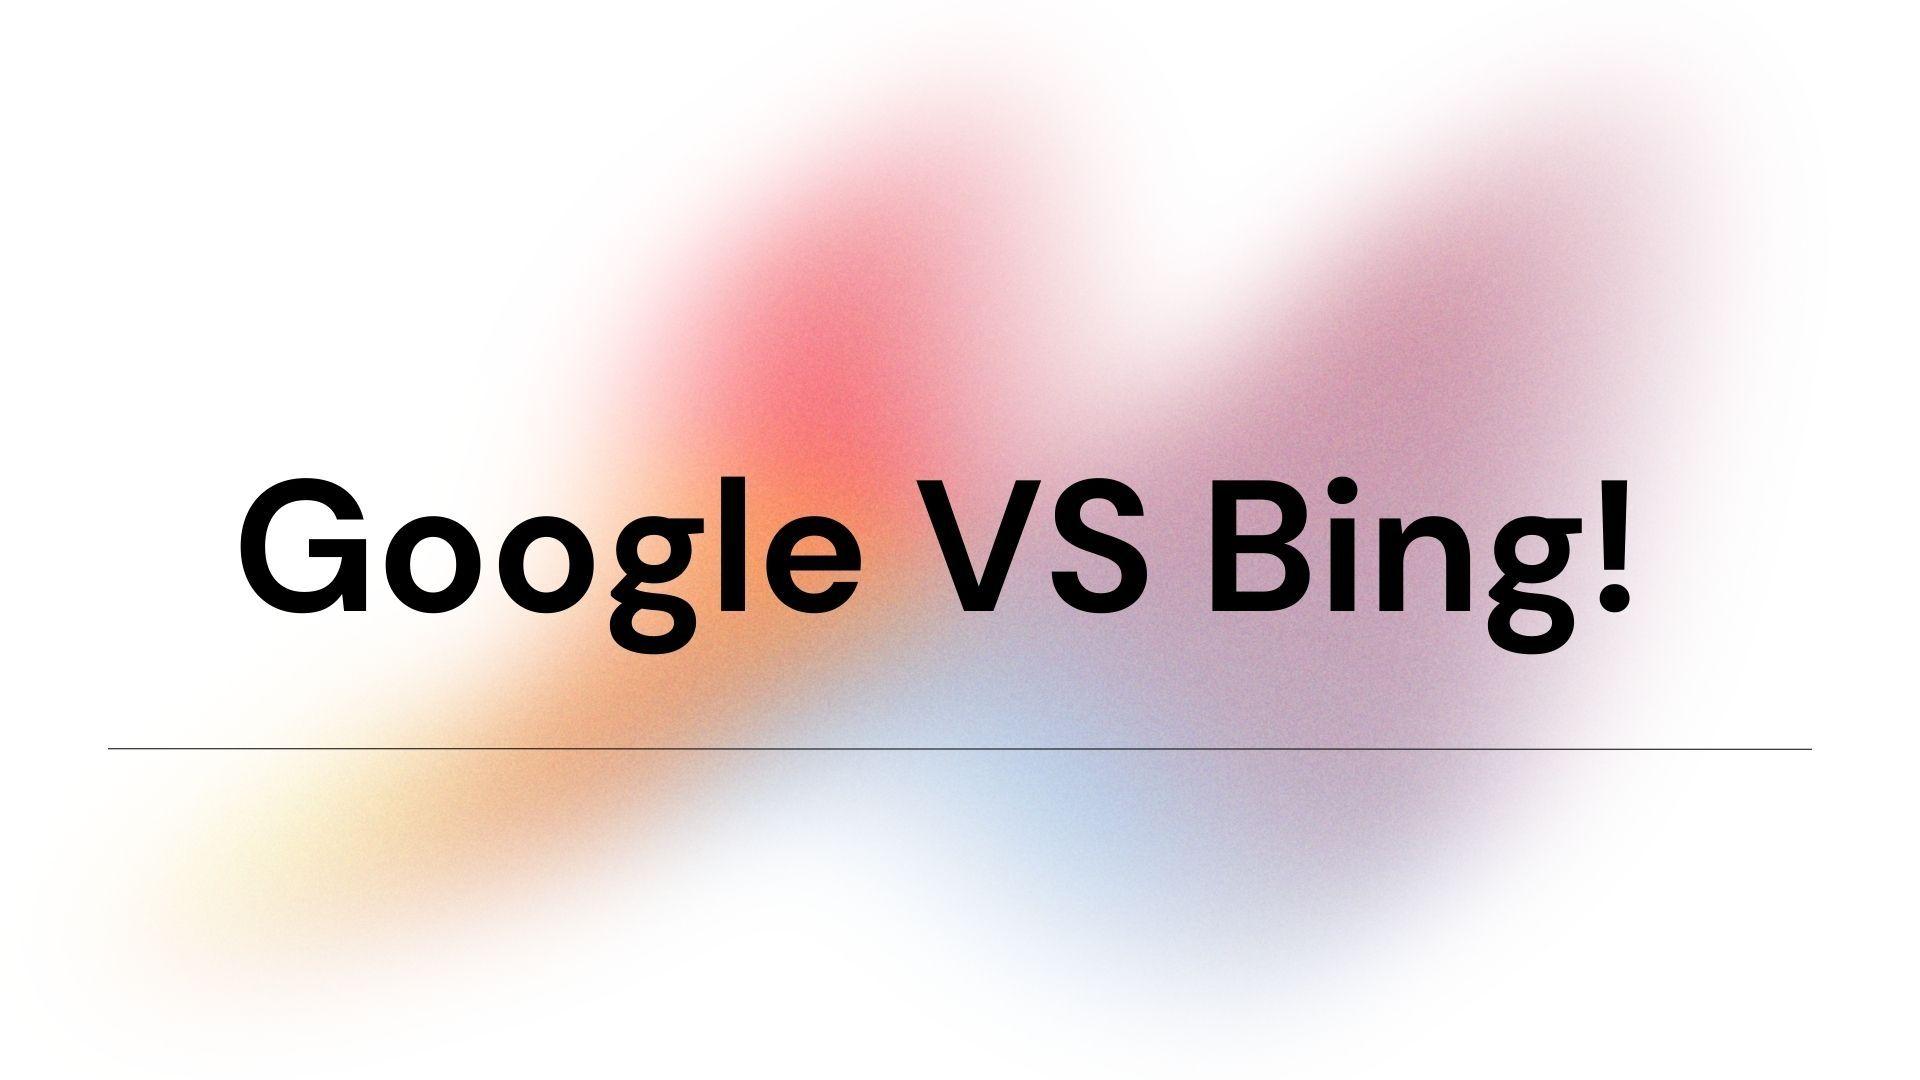 Google VS Bing!